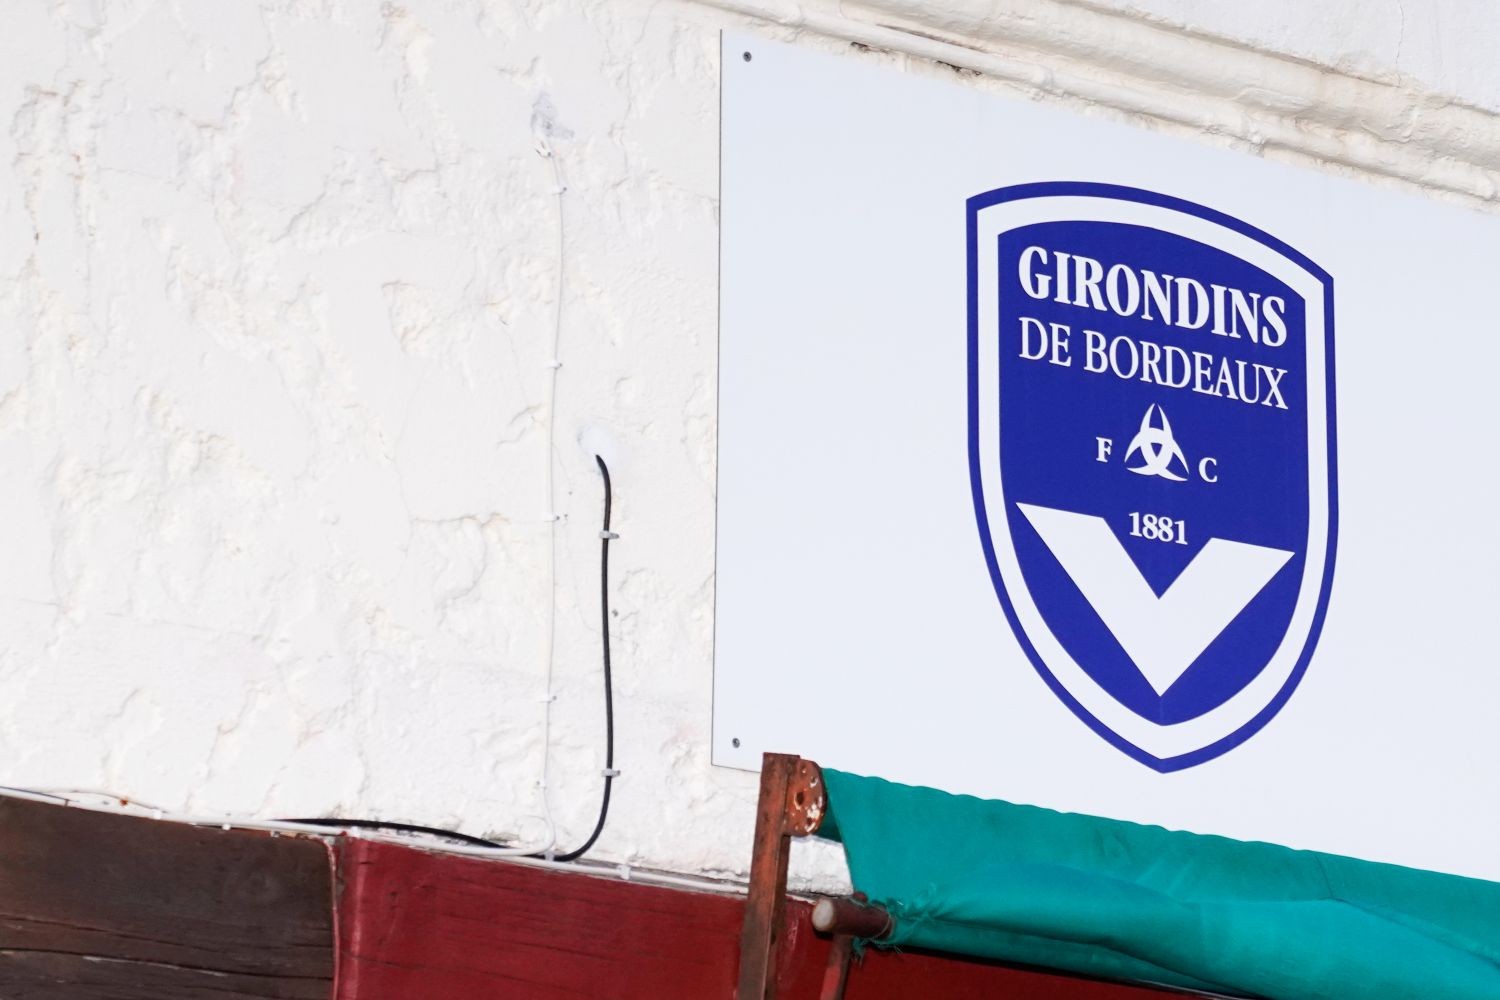 OFICJALNIE: Girondins de Bordeaux przywrócone do gry w Ligue 2. Pierwszy mecz zagra... w sobotę